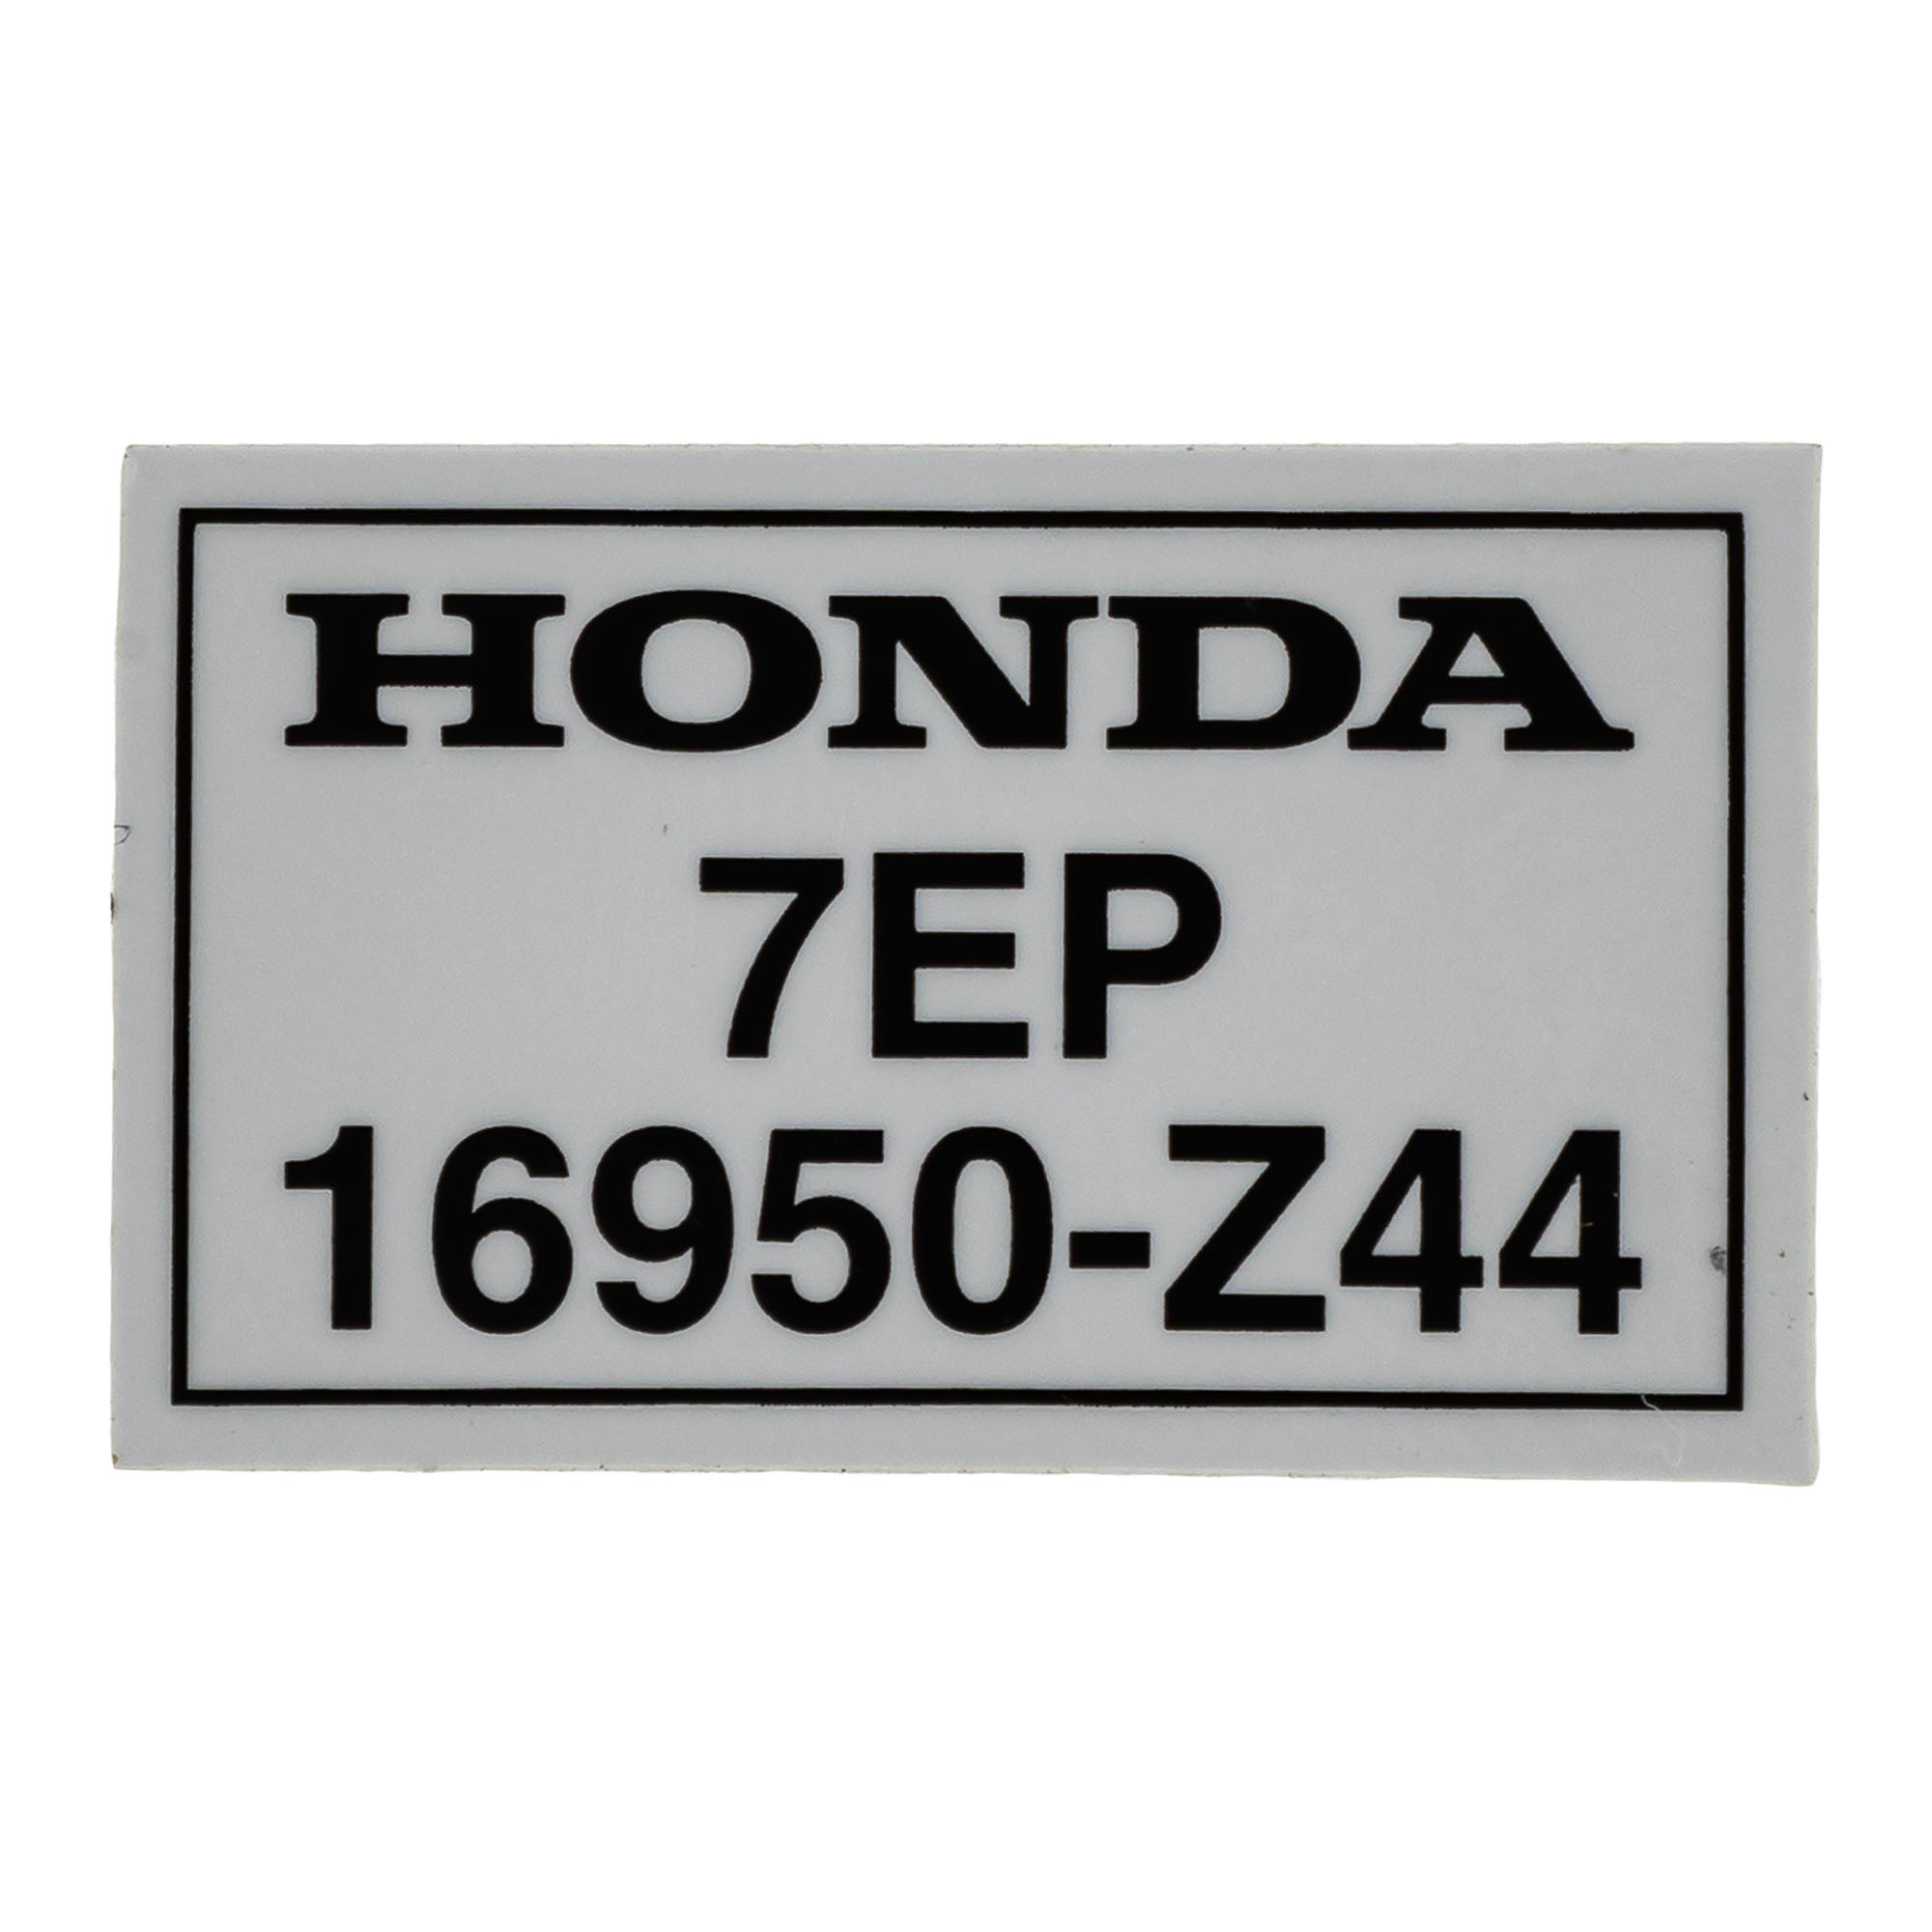 Honda 06161-Z44-A30 Recall Fuel Petcock Valve Kit  EU2200 EU2200i Generators Fix